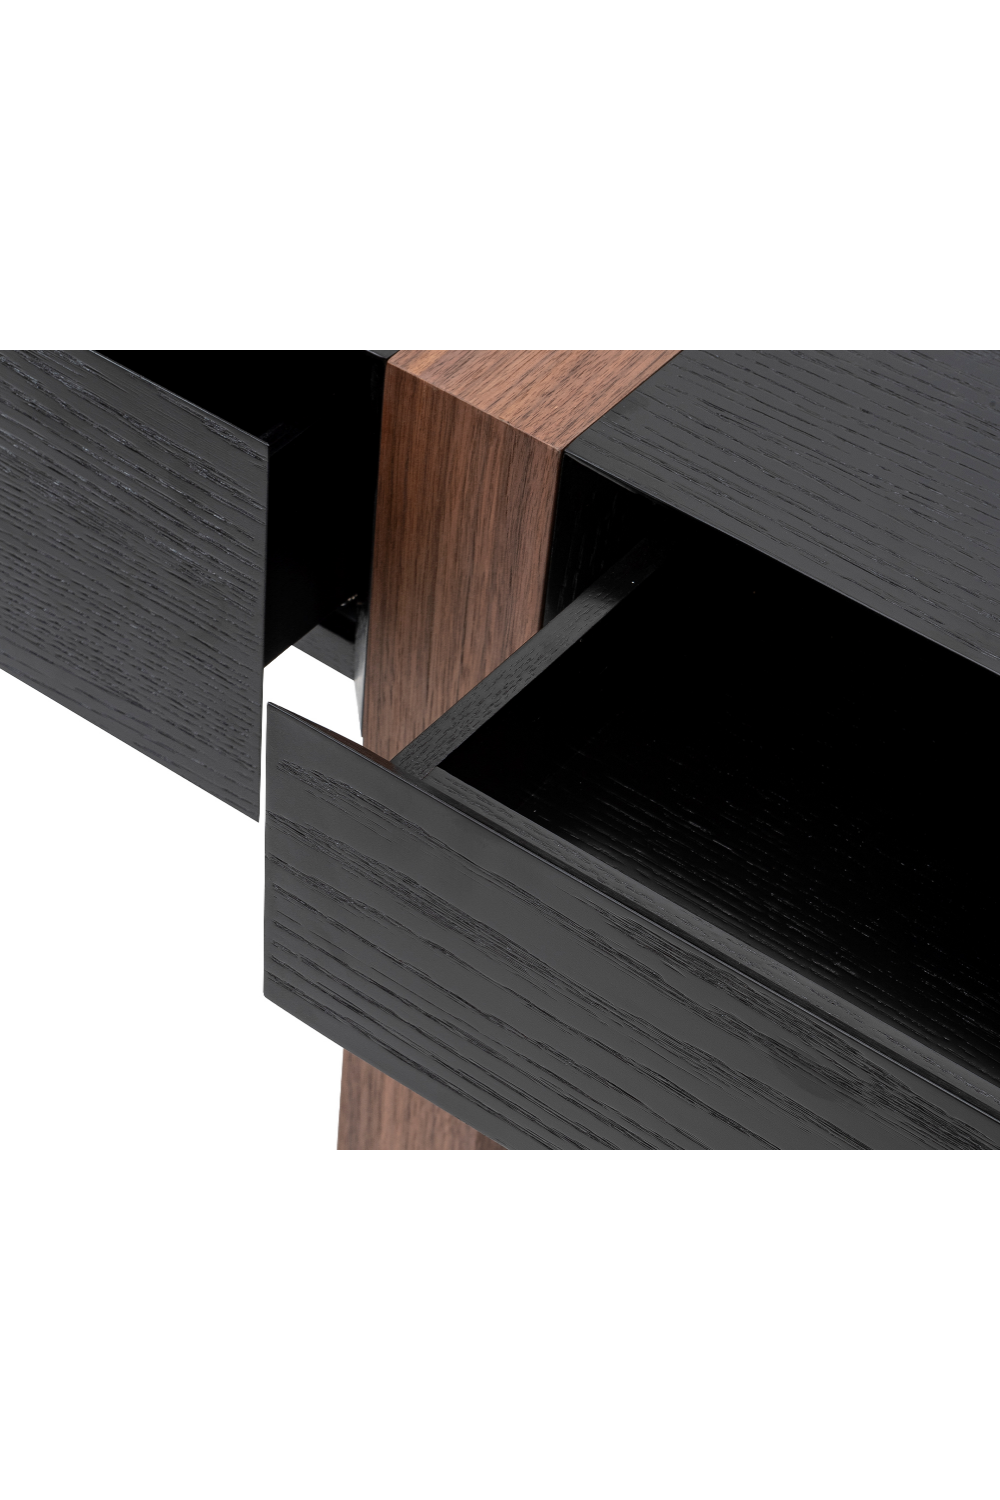 2-Tone Wooden Desk | Liang & Eimil Borgo | #1 Eichholtz Retailer